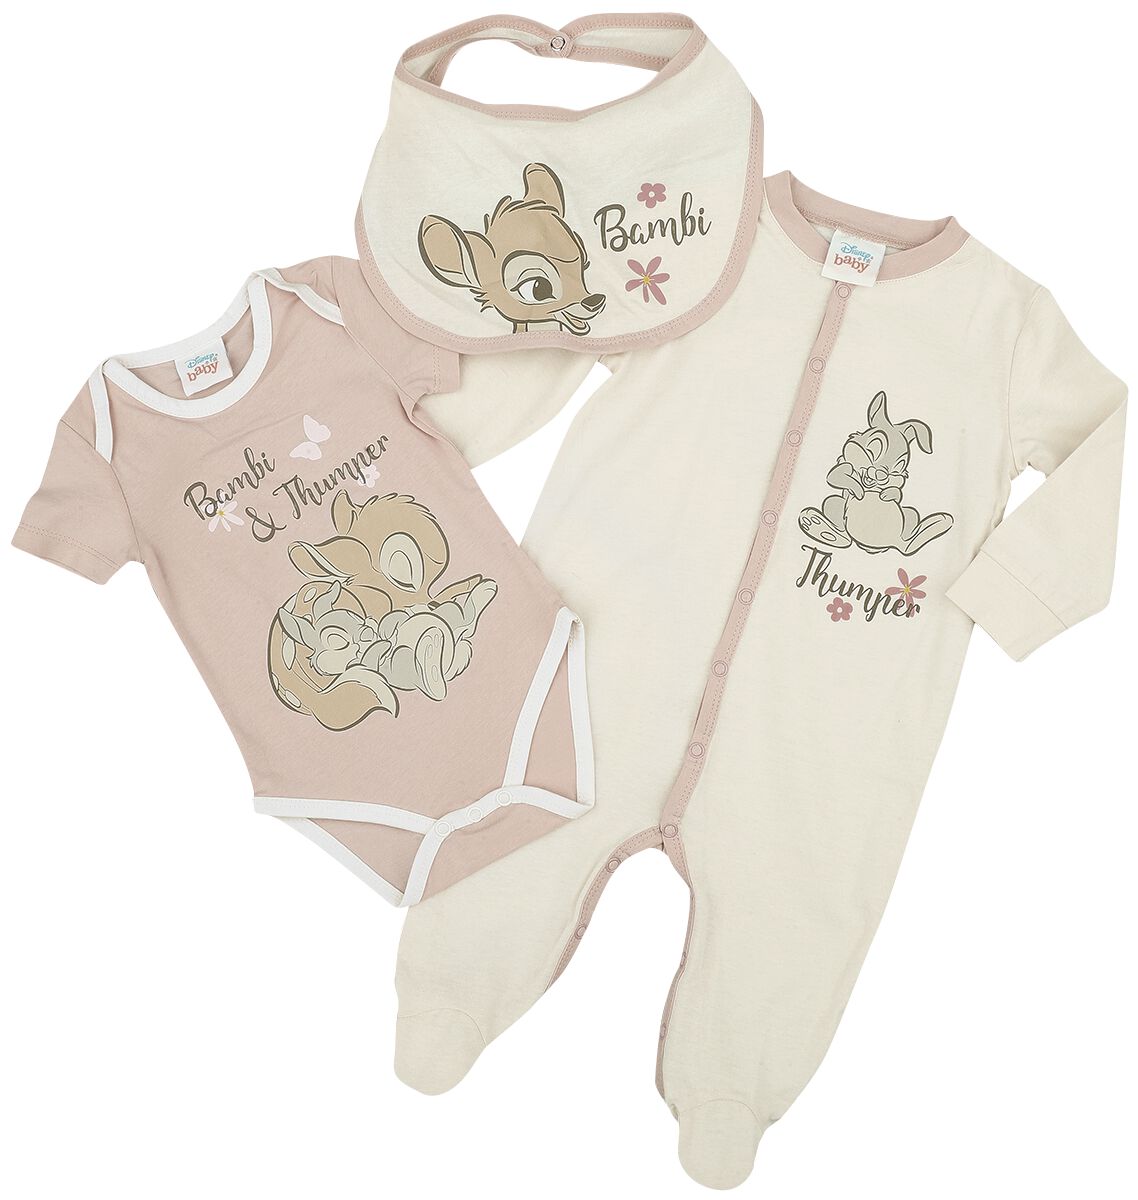 Bambi - Disney Set - Kids - Bambi - 56 bis 74 - für Mädchen - Größe 74 - multicolor  - EMP exklusives Merchandise!